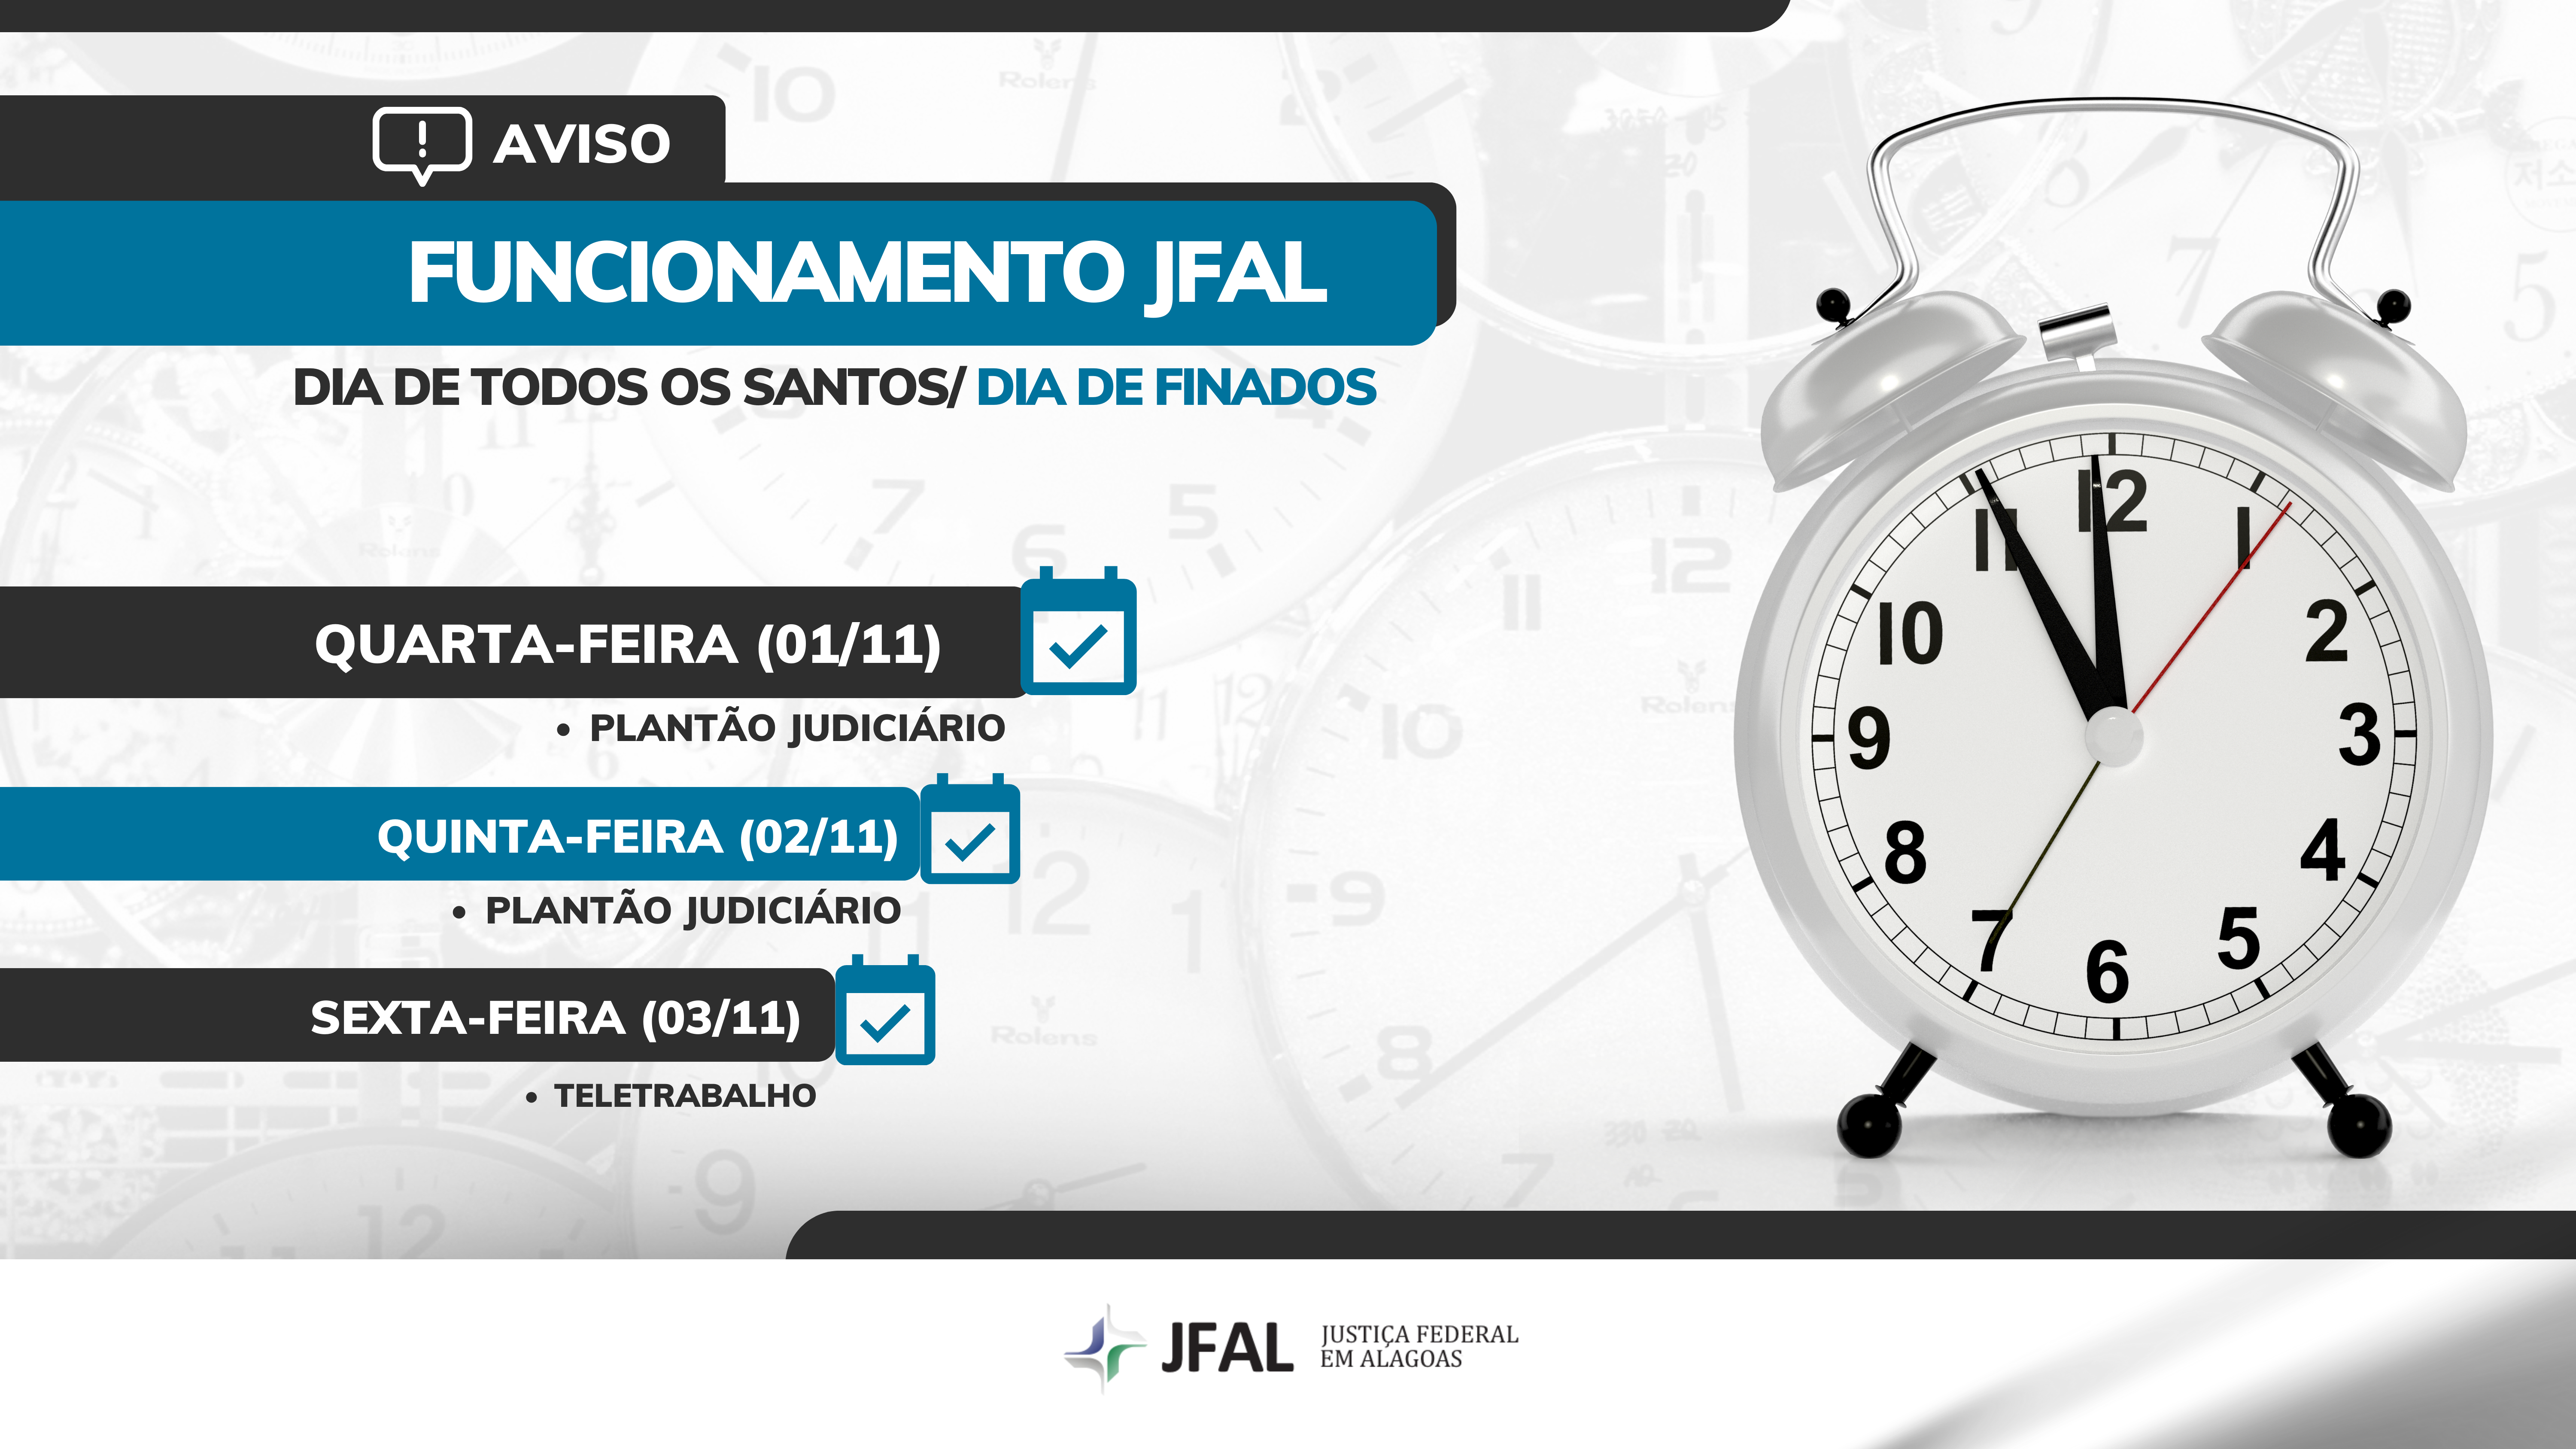 Expediente na Ufal será alterado na sexta-feira (9) em virtude do jogo do  Brasil — Universidade Federal de Alagoas